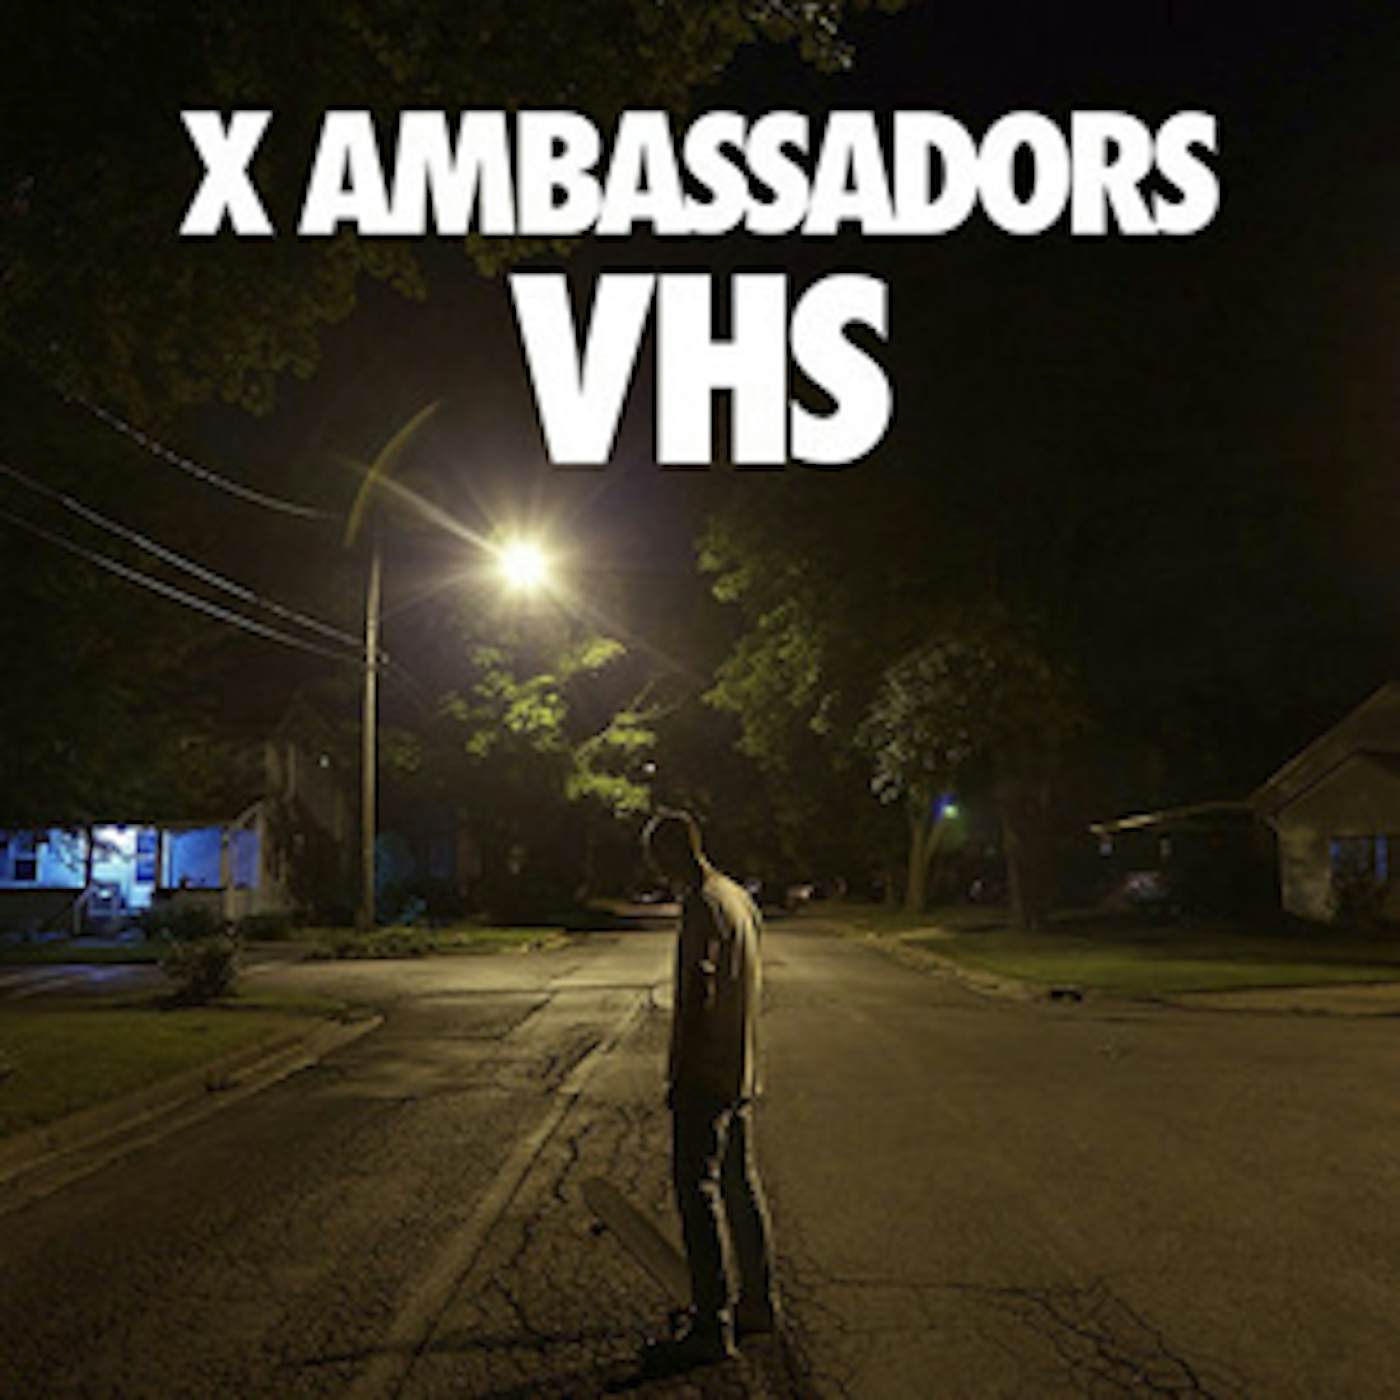 X Ambassadors VHS Vinyl Record